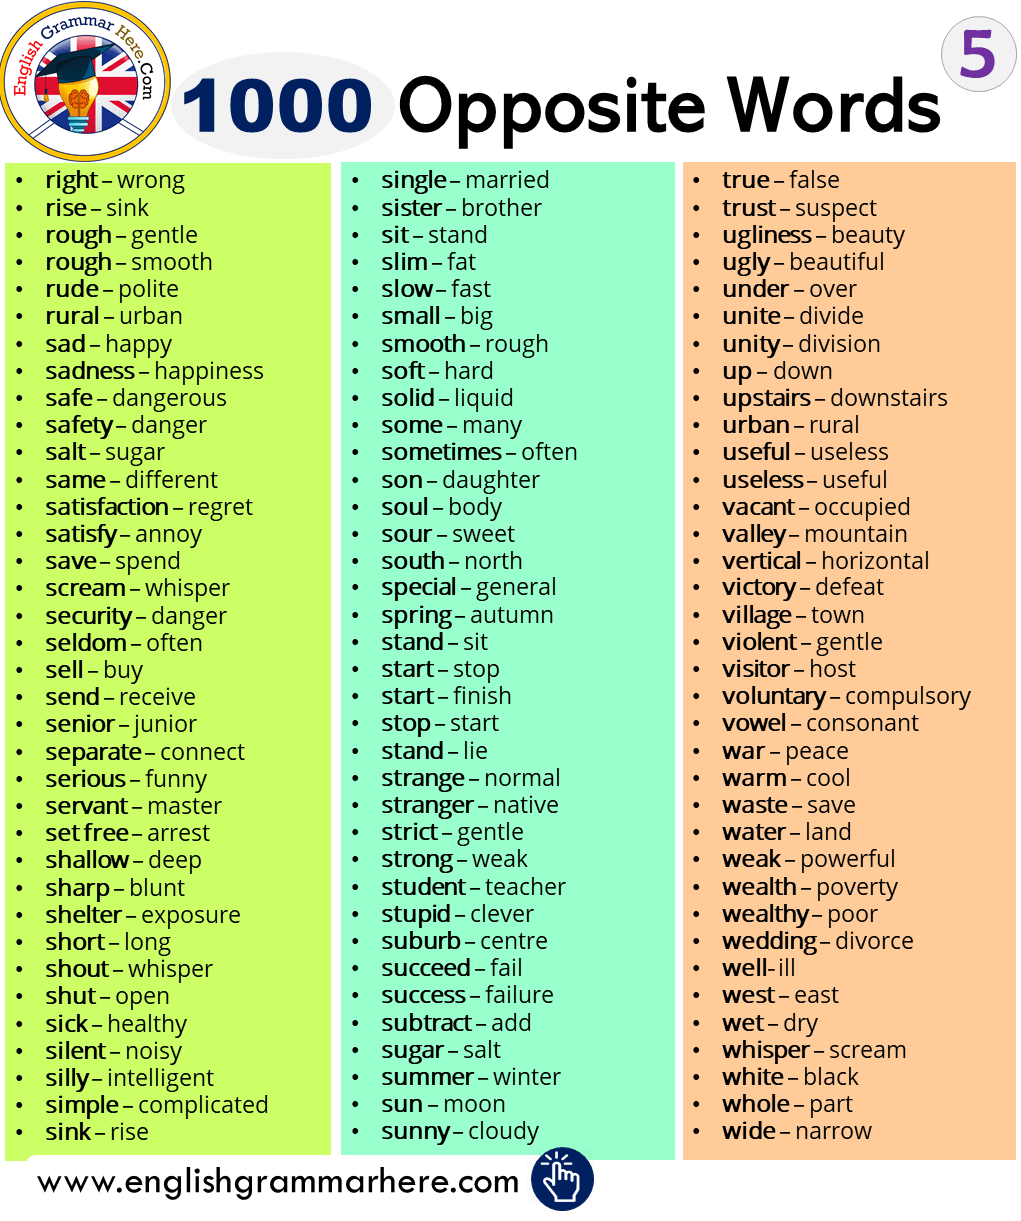 1000 Opposite / Antonym Words List in English